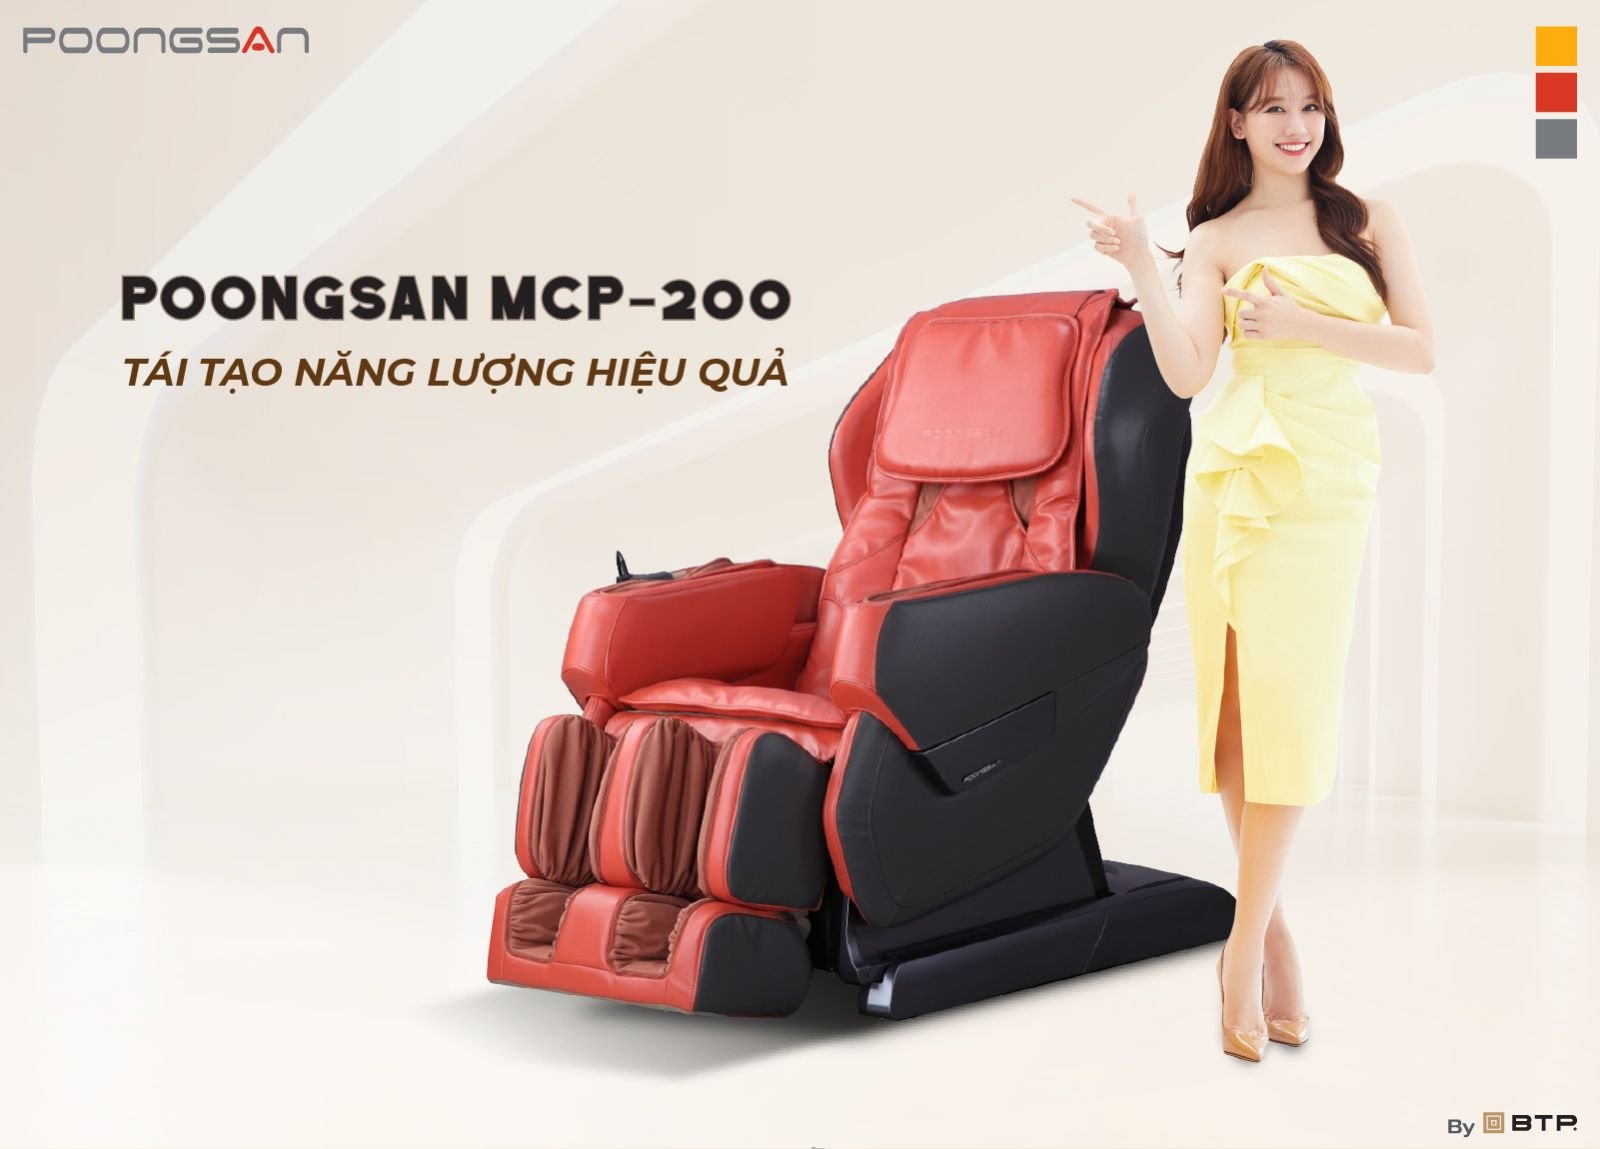 Poongsan MCP-200 chăm sóc sức khỏe gia đình bạn